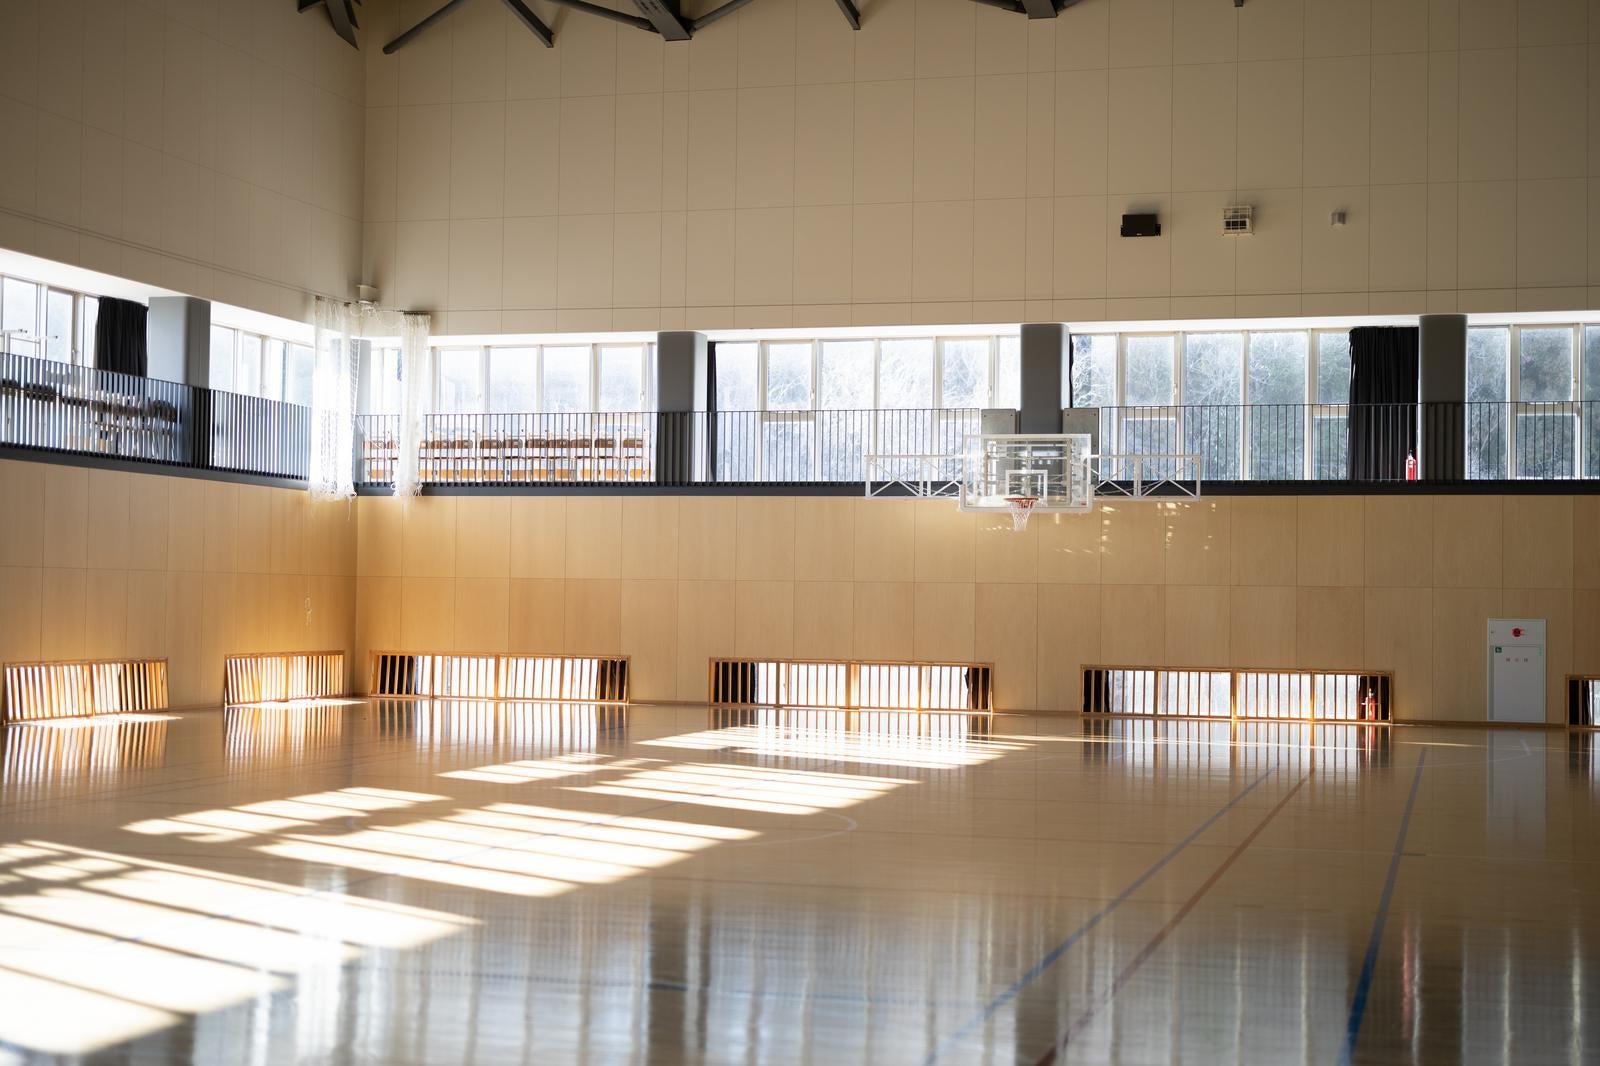 「自然光とふたば未来学園の体育館」の写真